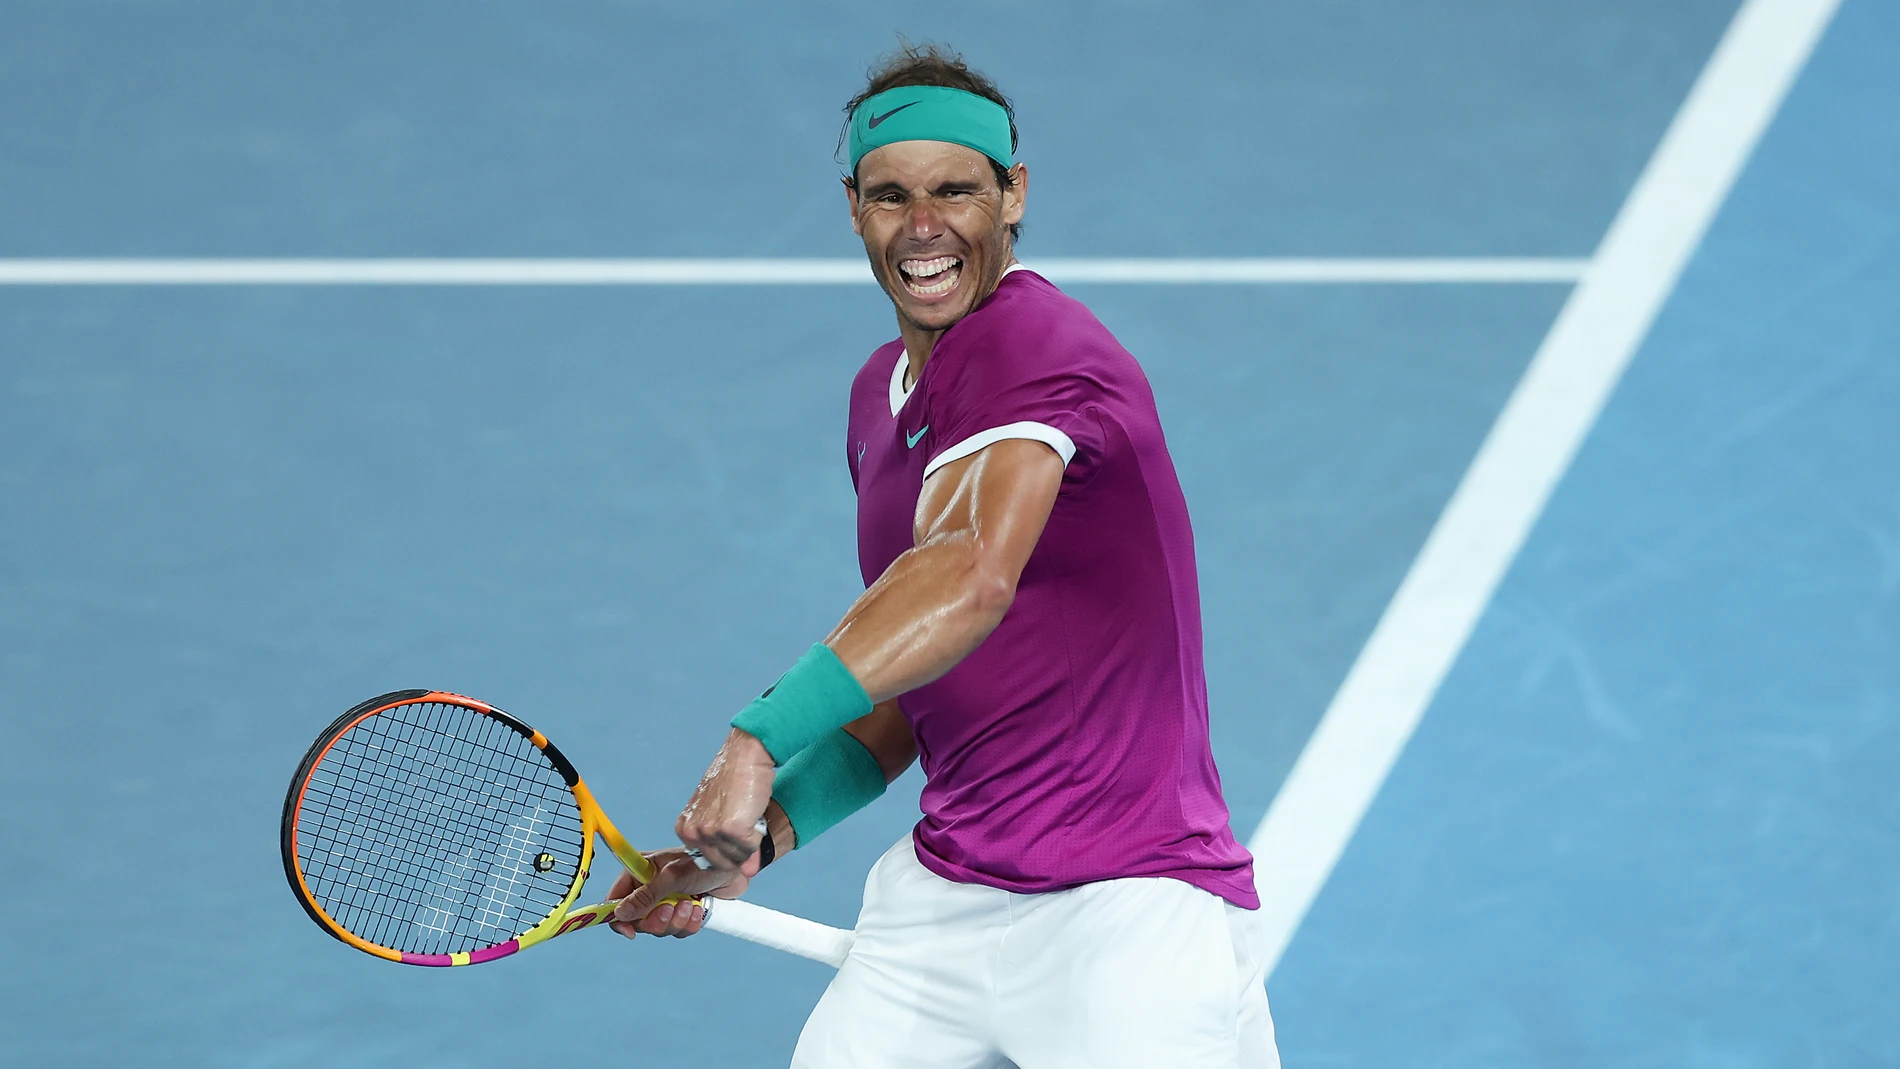 La resurrección de Rafa Nadal: de tener su carrera en jaque a jugar la  final del Open de Australia